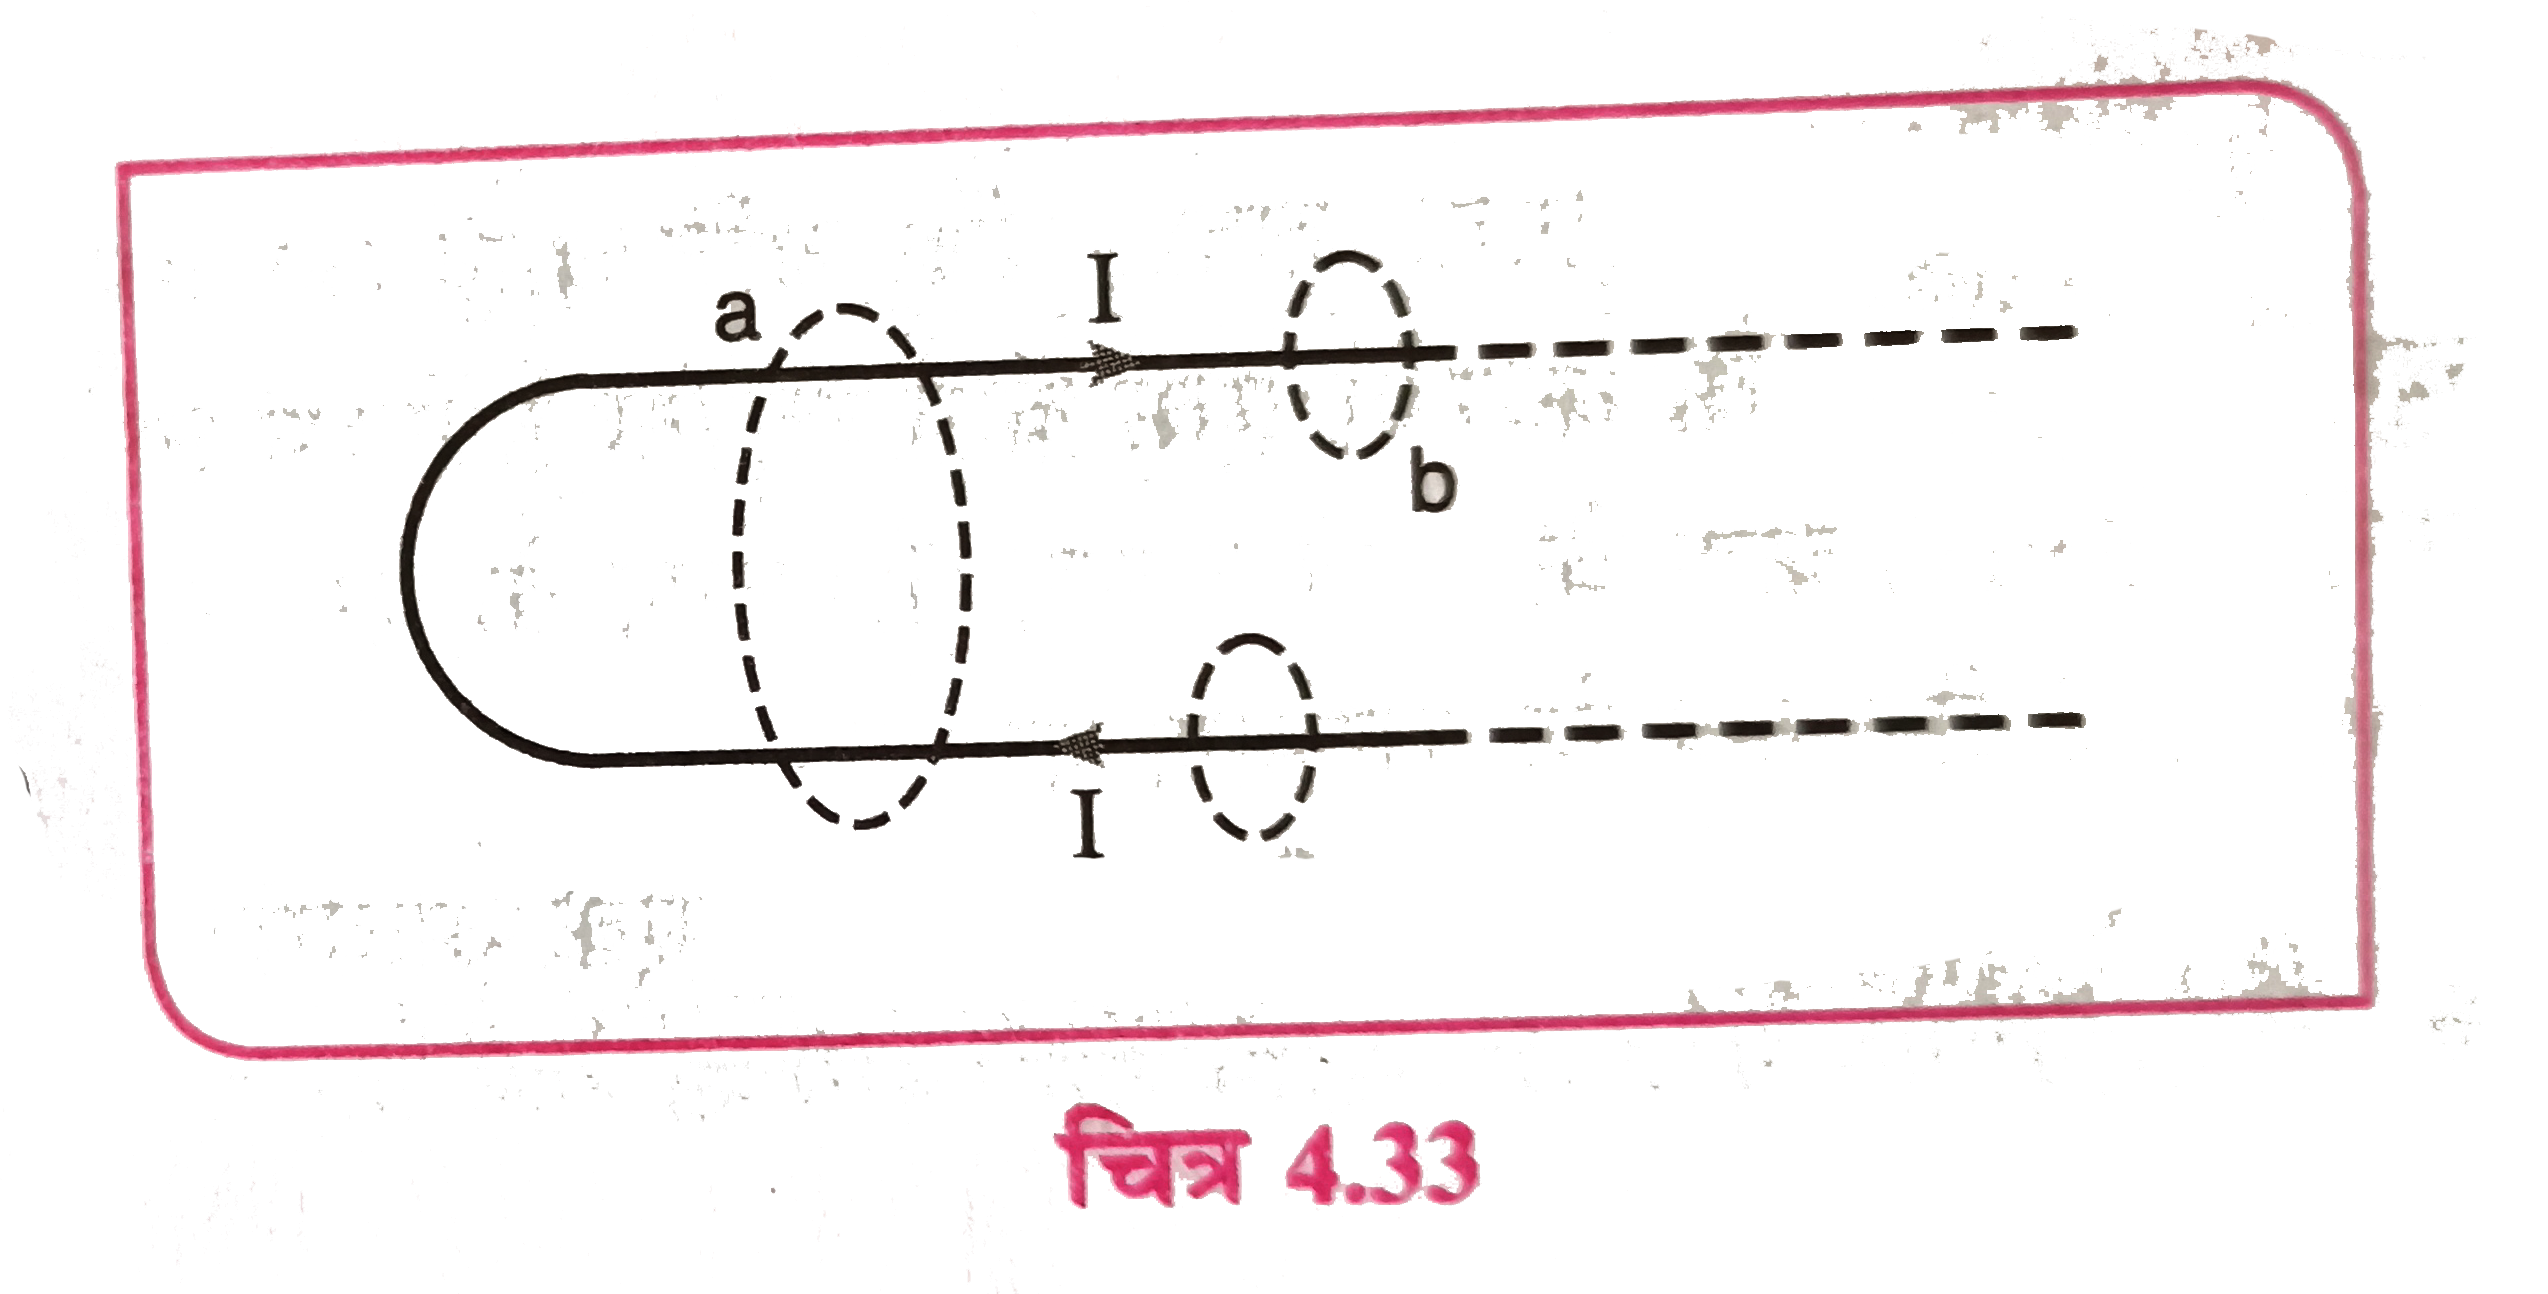 चित्र में प्रदर्शित तीन मार्गों a, b तथा c के लिए ऐम्पियर के नियम से चुम्बकीय क्षेत्र के रेखीय समाकलन के मान लिखिए ।